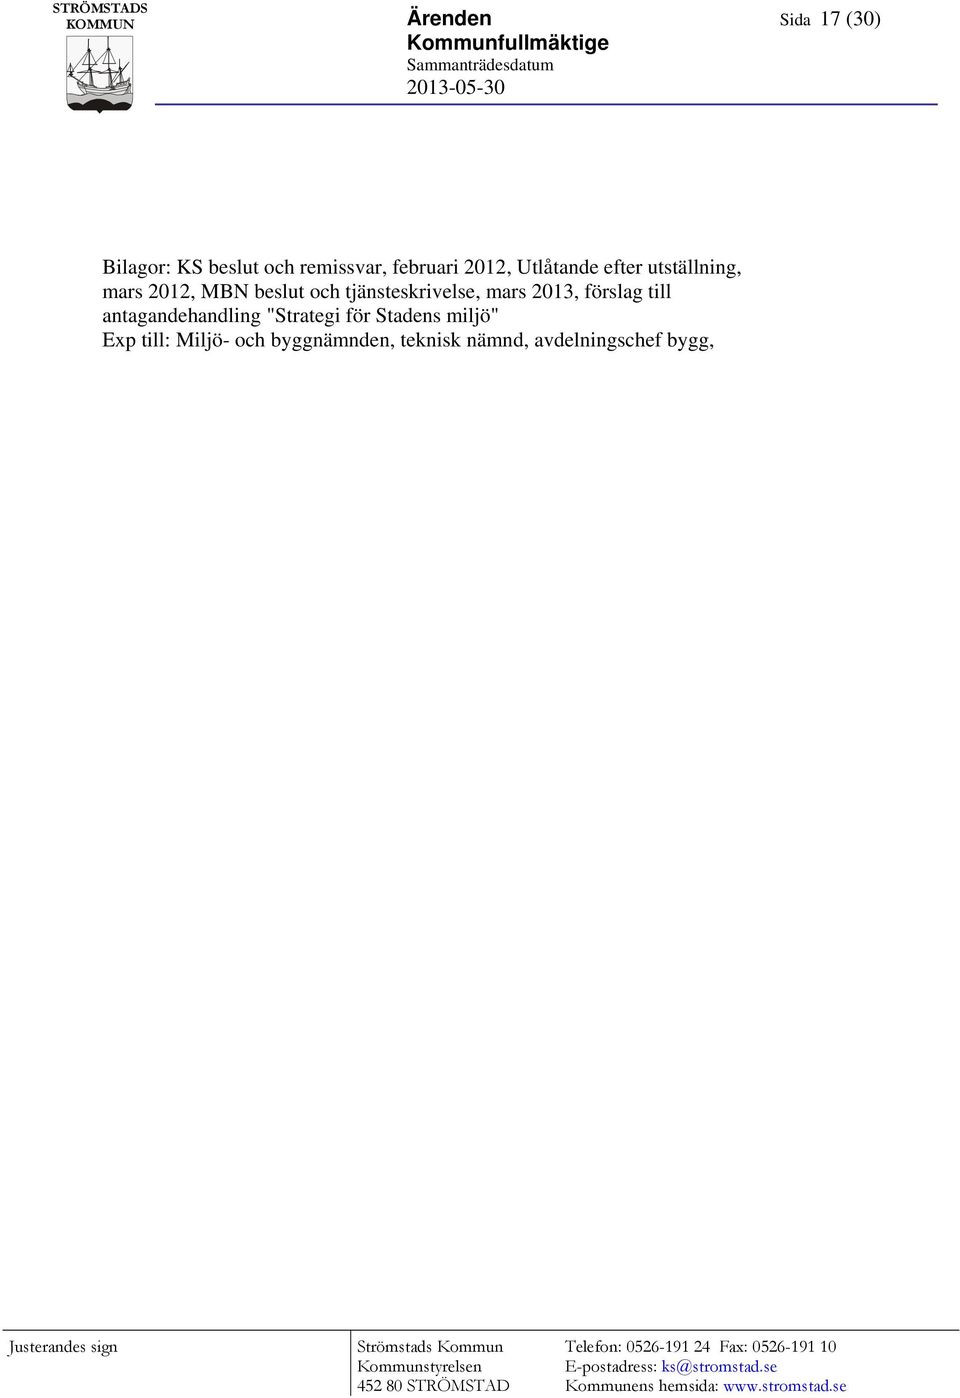 tjänsteskrivelse, mars 2013, förslag till antagandehandling "Strategi